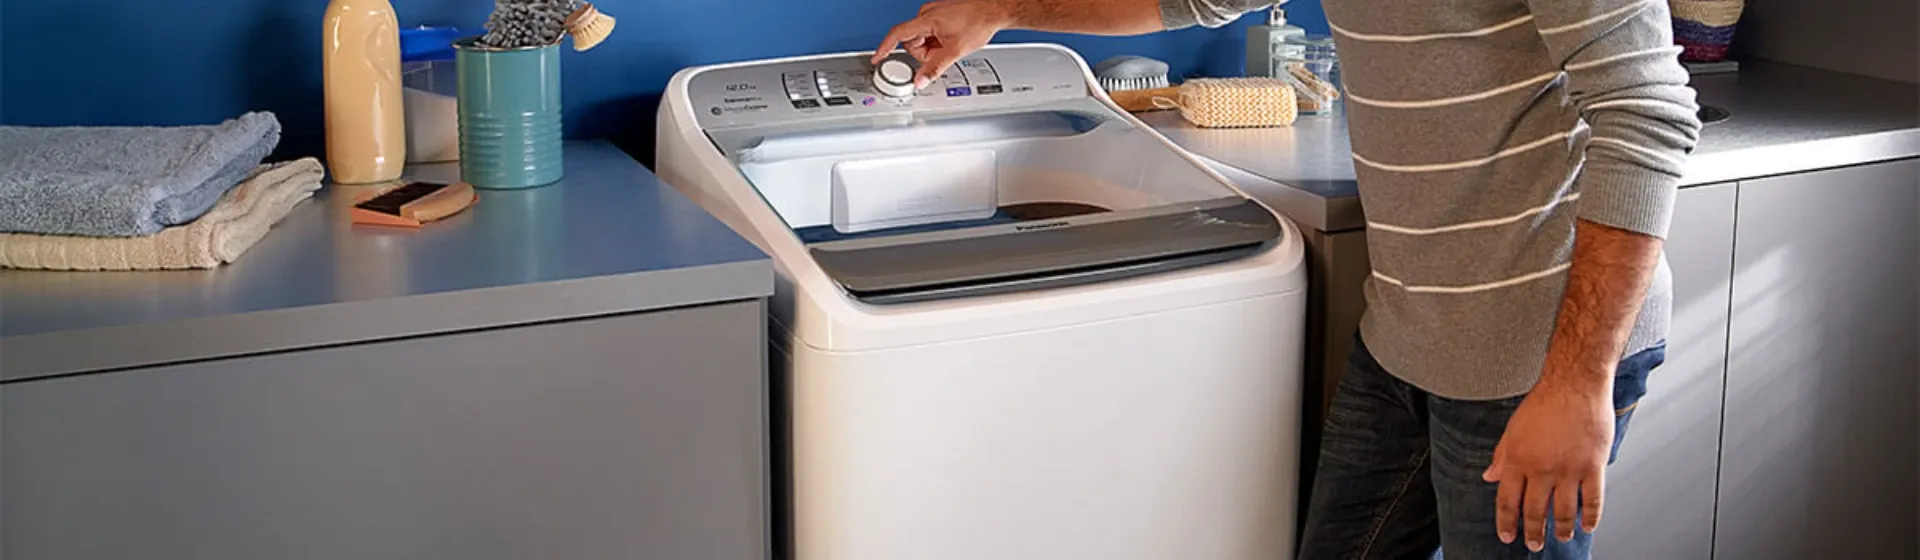 Melhor máquina de lavar roupa 16kg em 2022: 5 opções